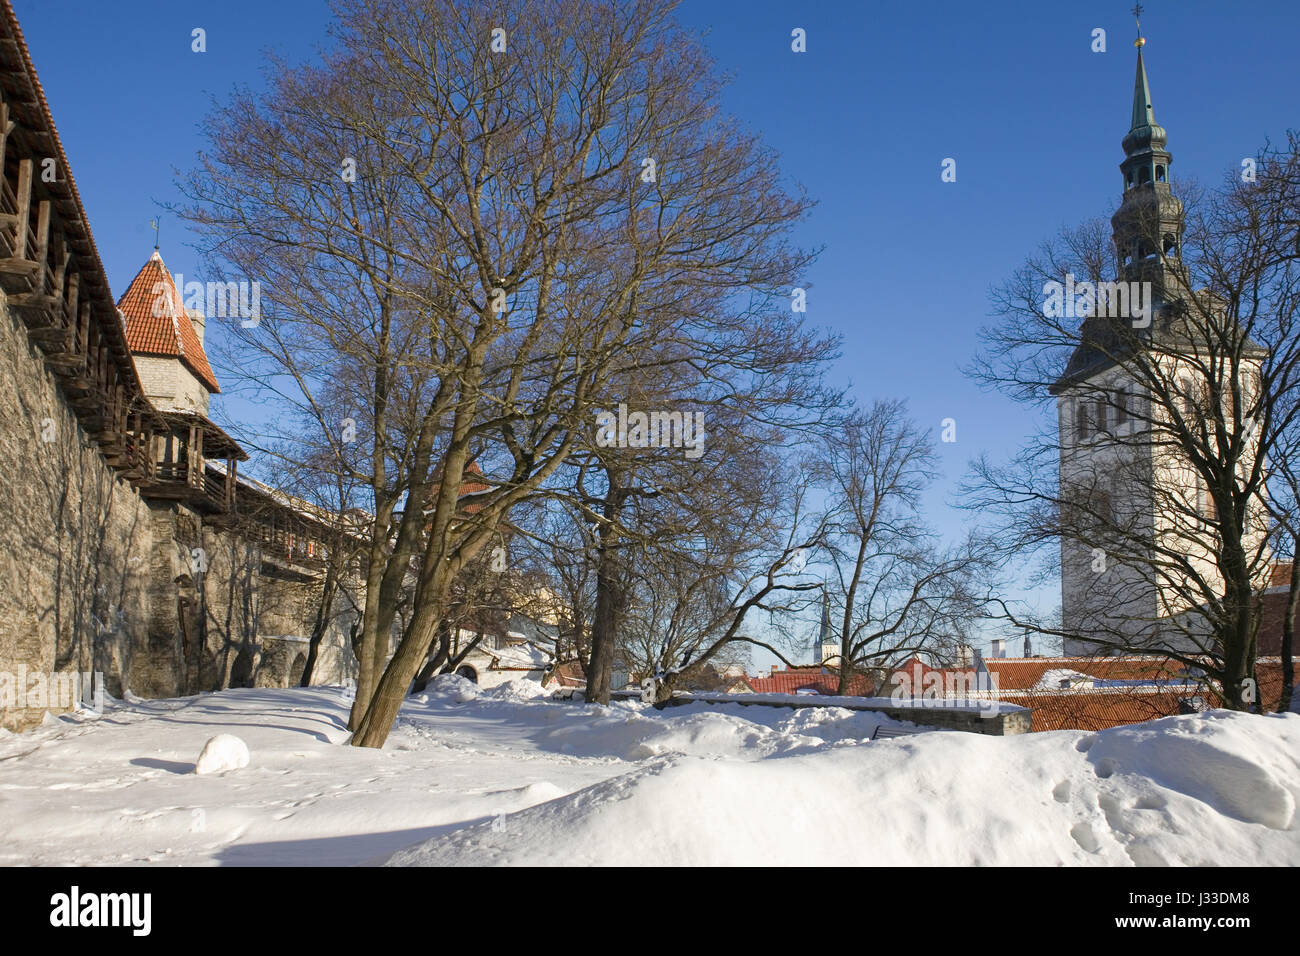 Taani Kuninga AED (le jardin du roi danois) sur les pentes de la colline de Toompea (cathédrale) avec la ville médiévale sur la gauche : Tallinn, Estonie Banque D'Images